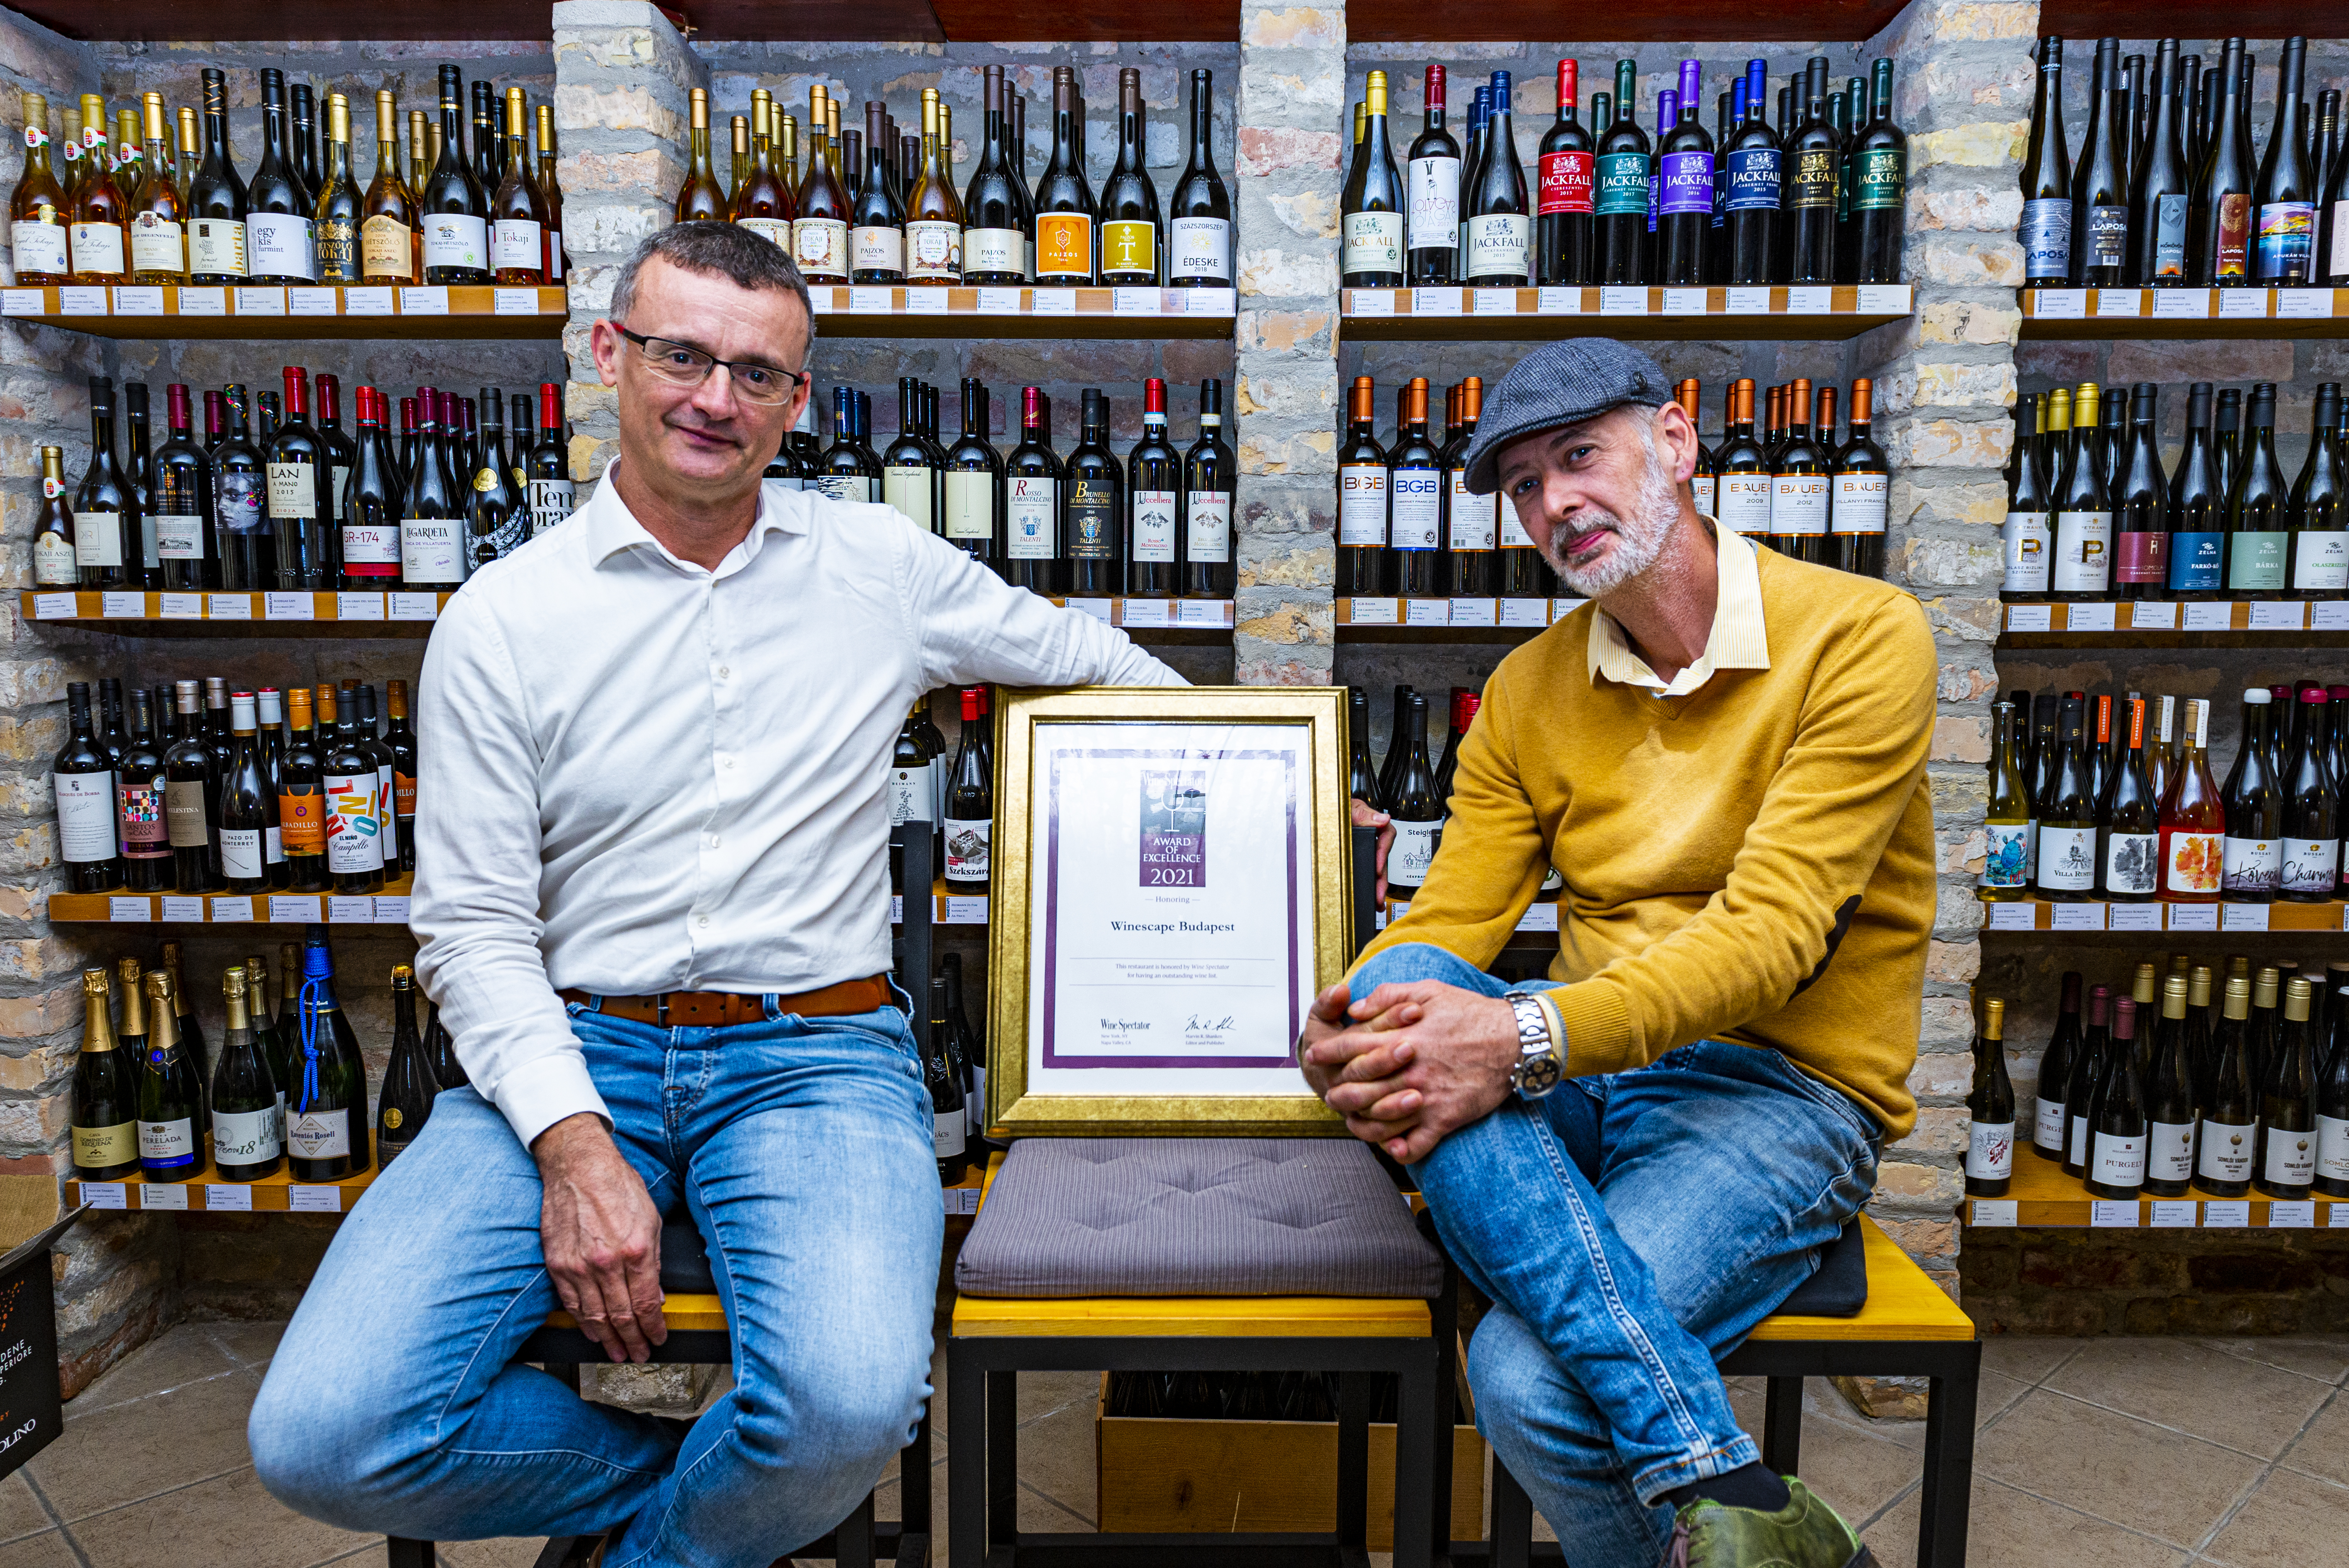 A frissen díjazott Winescape Budapest Borbár tulajdonosával, Bányai Gábor Botonddal beszélgettünk